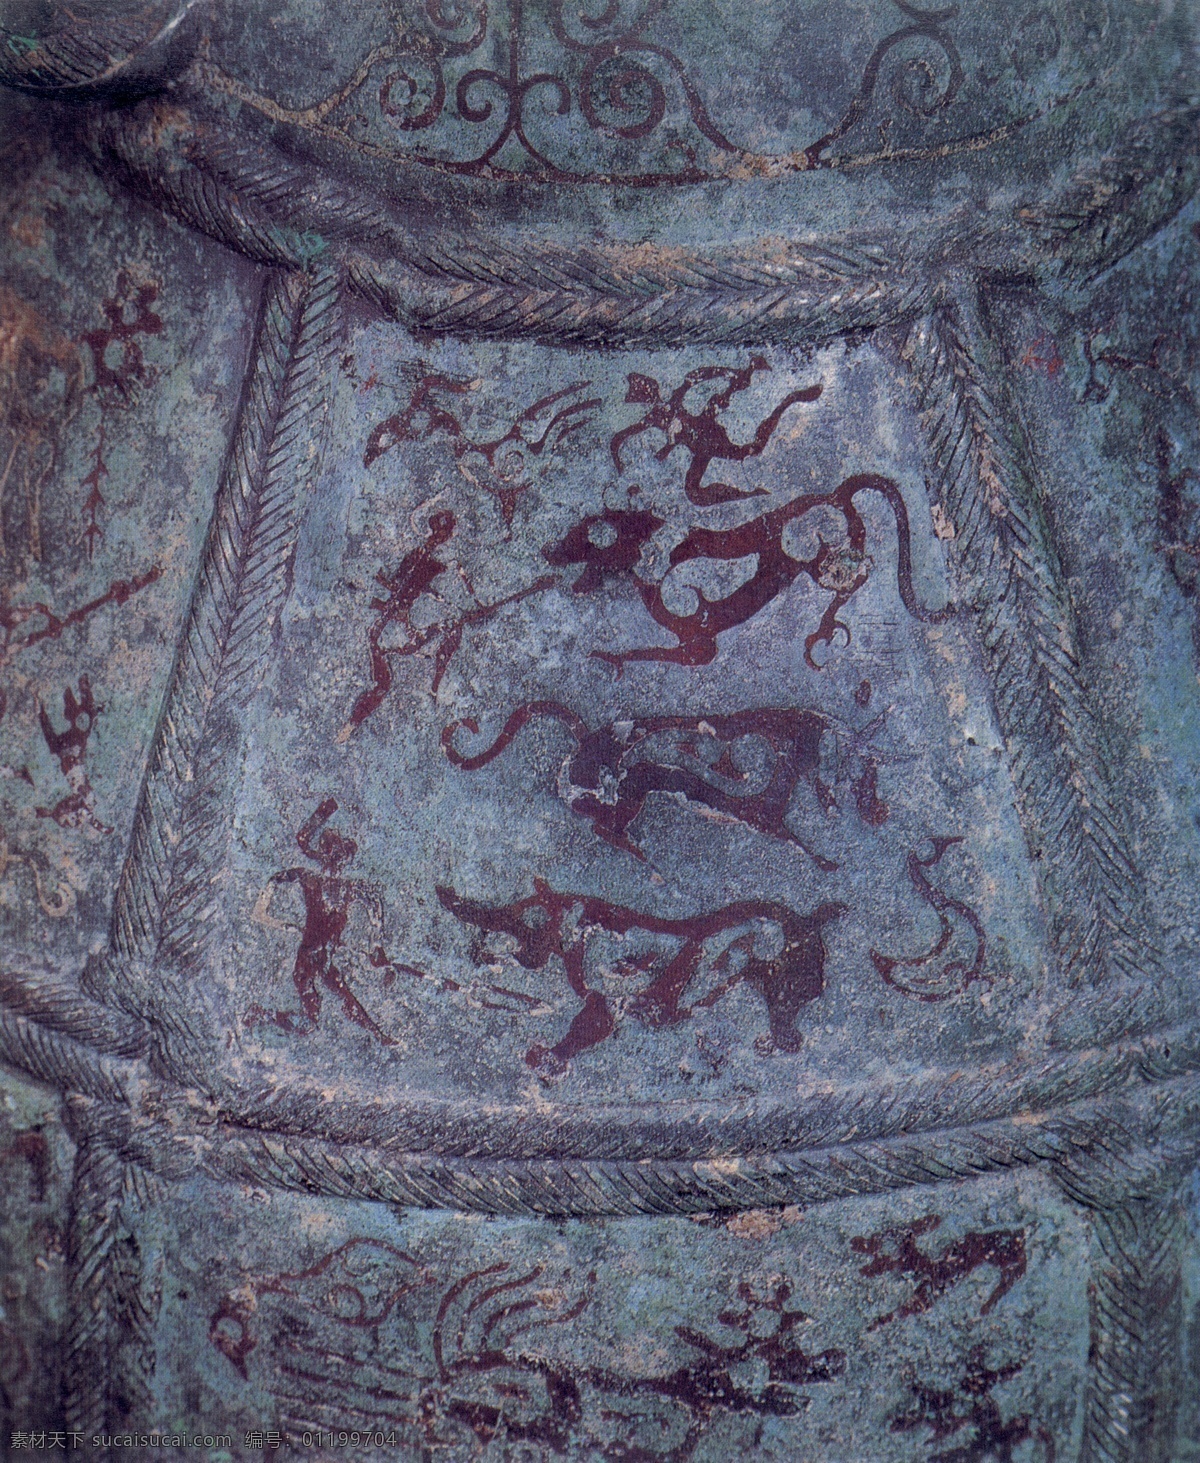 铜壶 镶嵌 狩猎 图 战国 设计素材 民间美术 书画美术 灰色